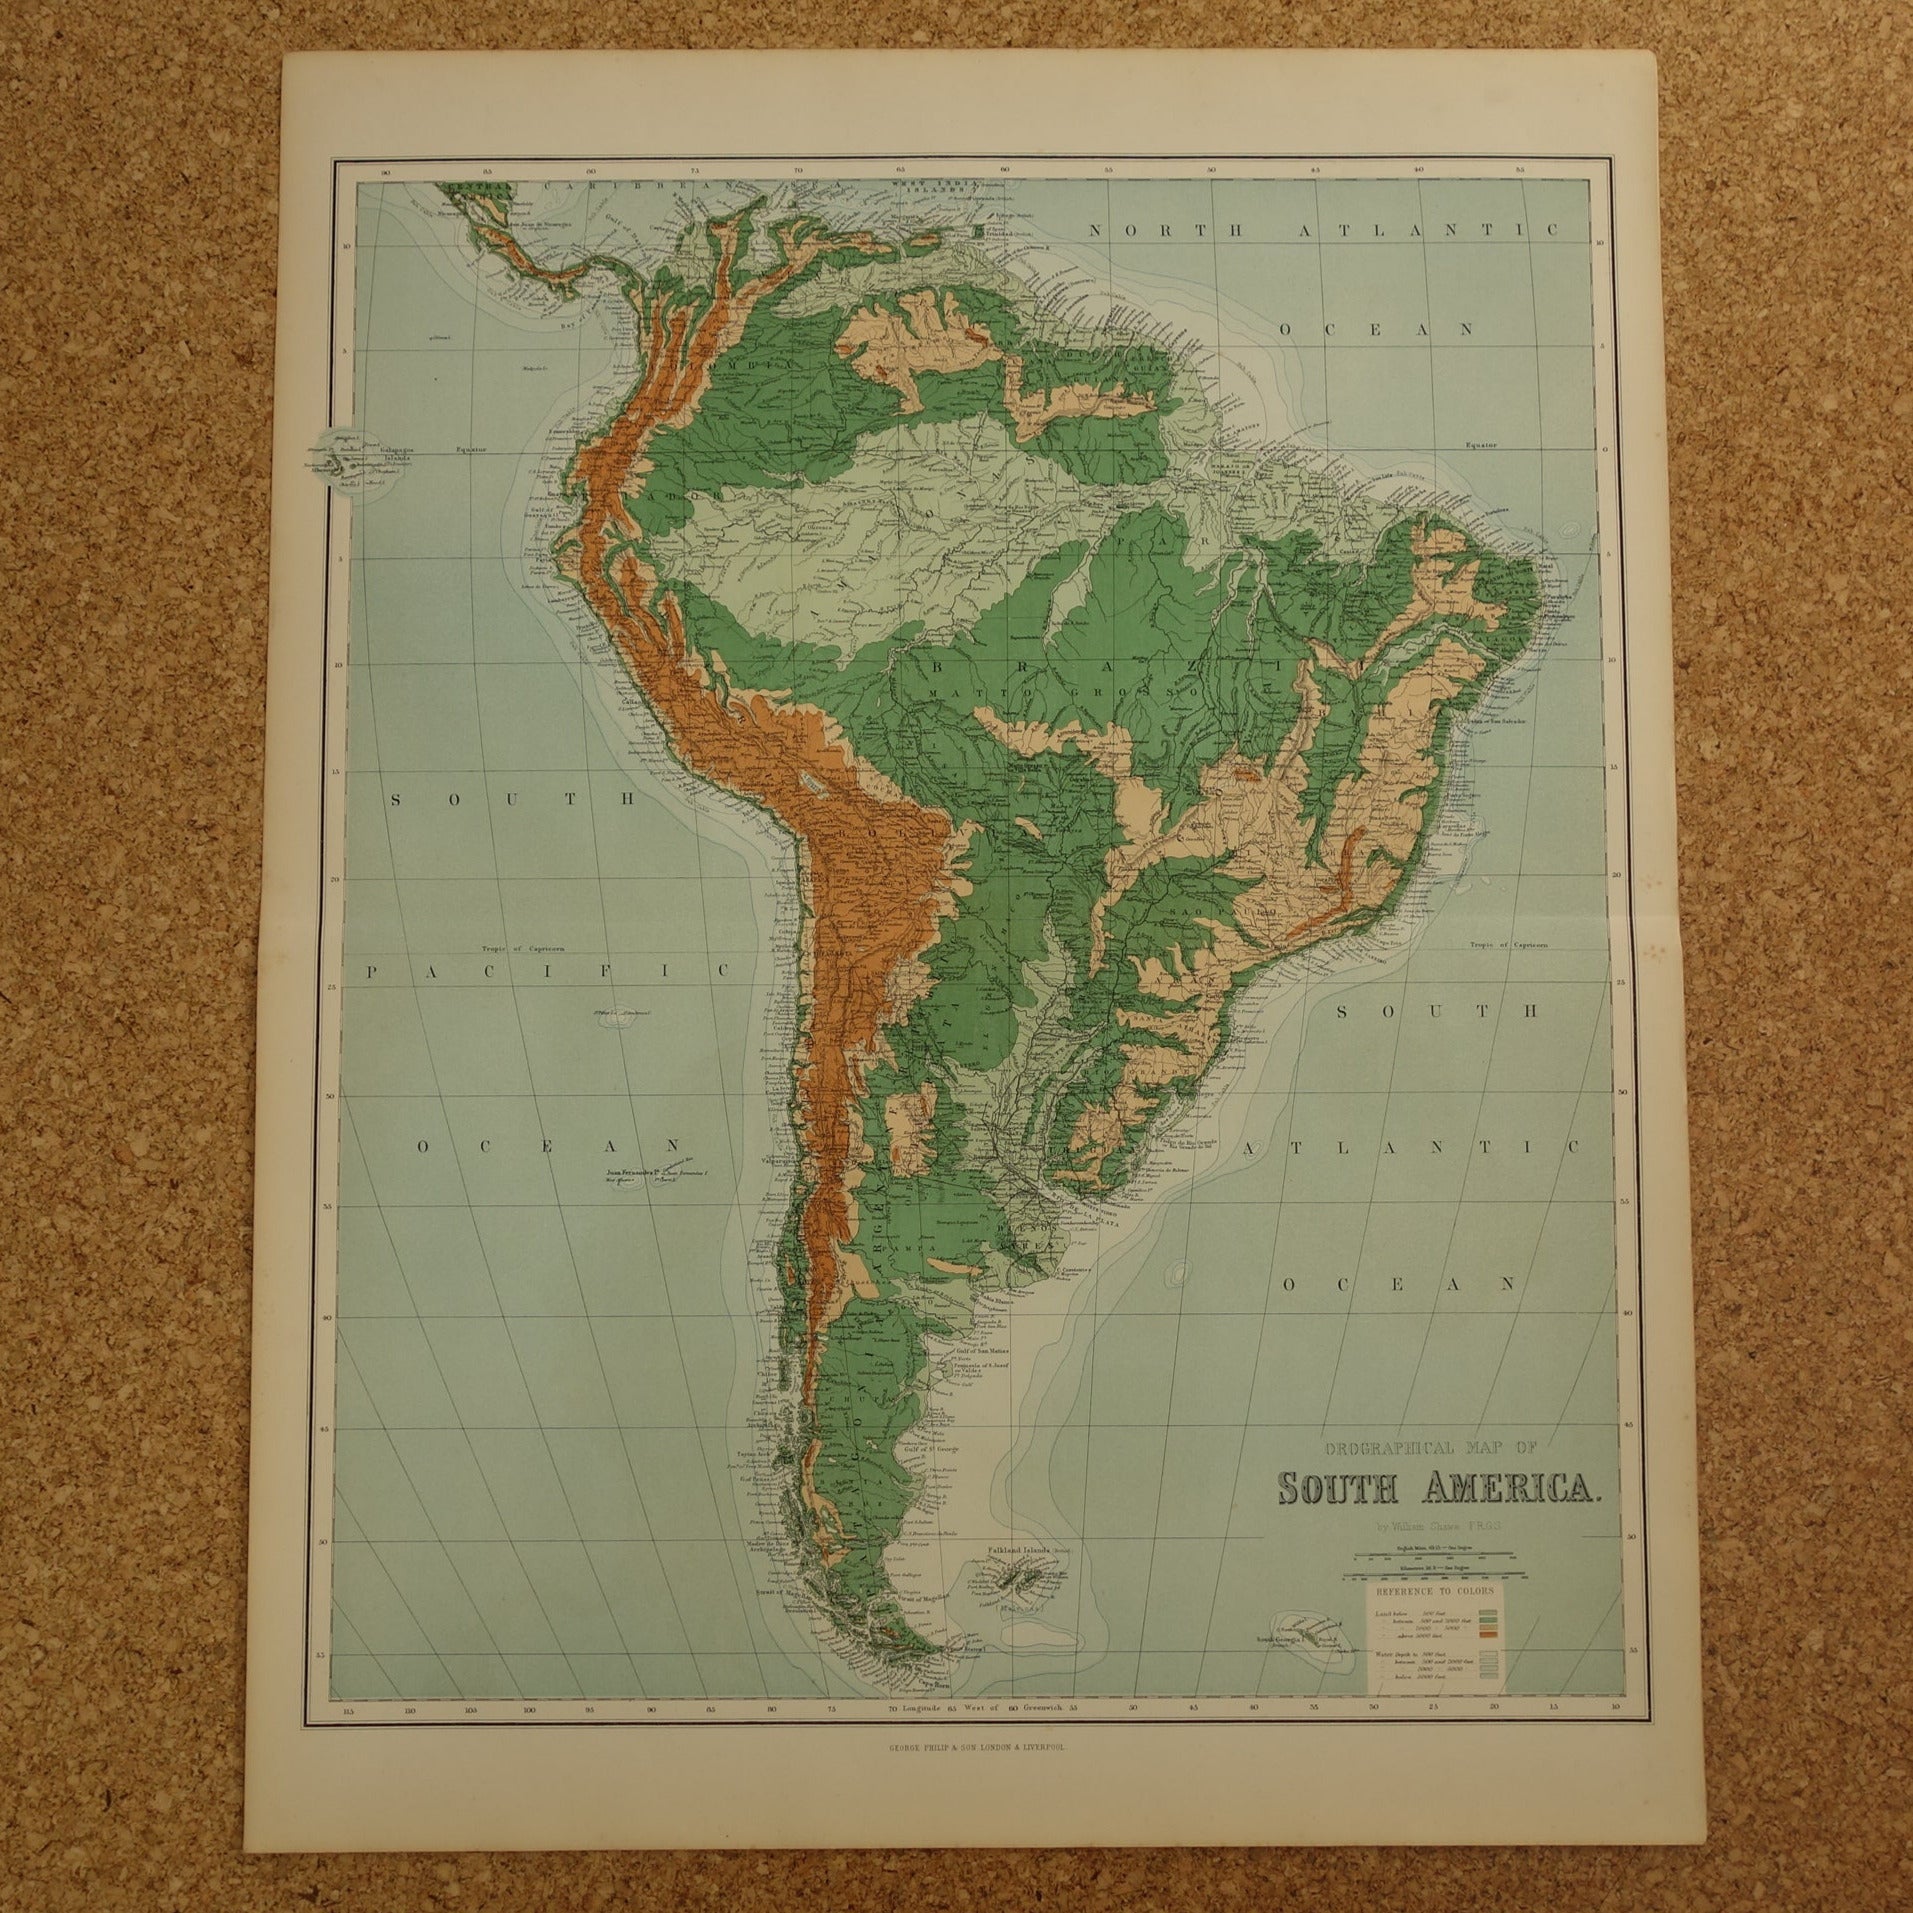 ZUID AMERIKA grote oude kaart van Zuid-Amerika 130+ jaar oude landkaart van continent uit 1890 originele vintage hoogtekaart